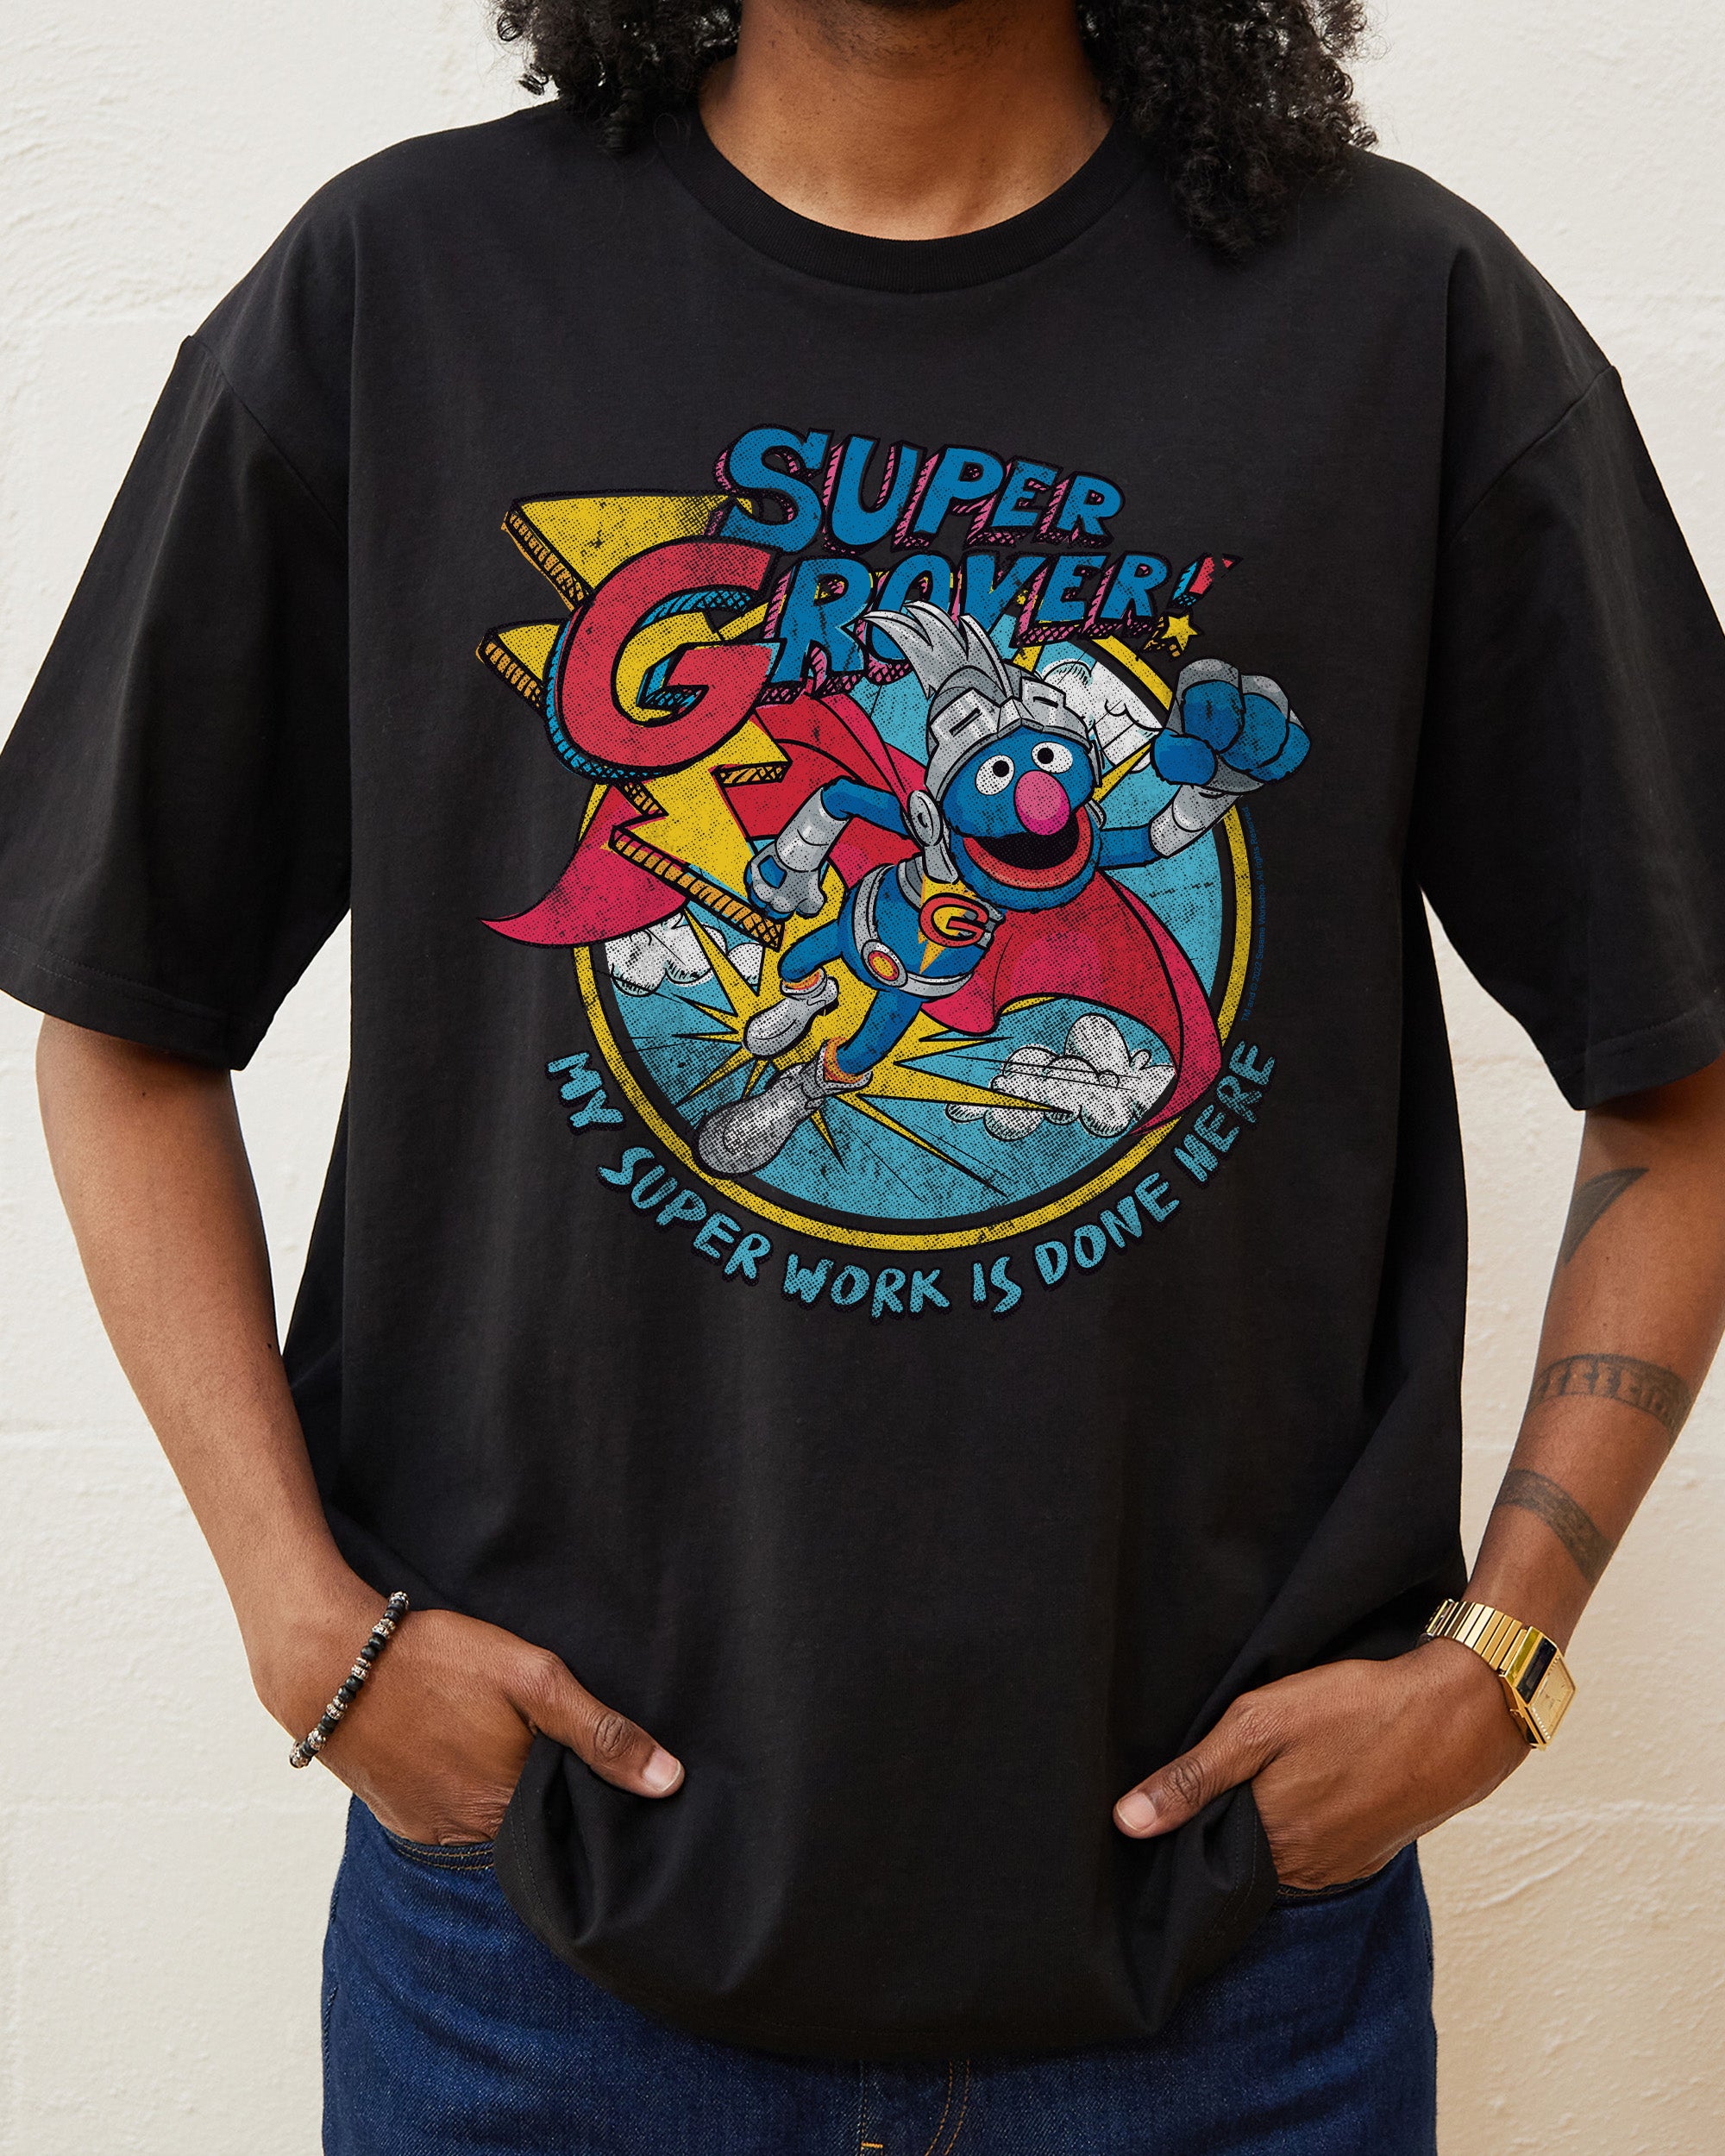 Super Grover Vintage T-Shirt, Official Sesame Street Merch